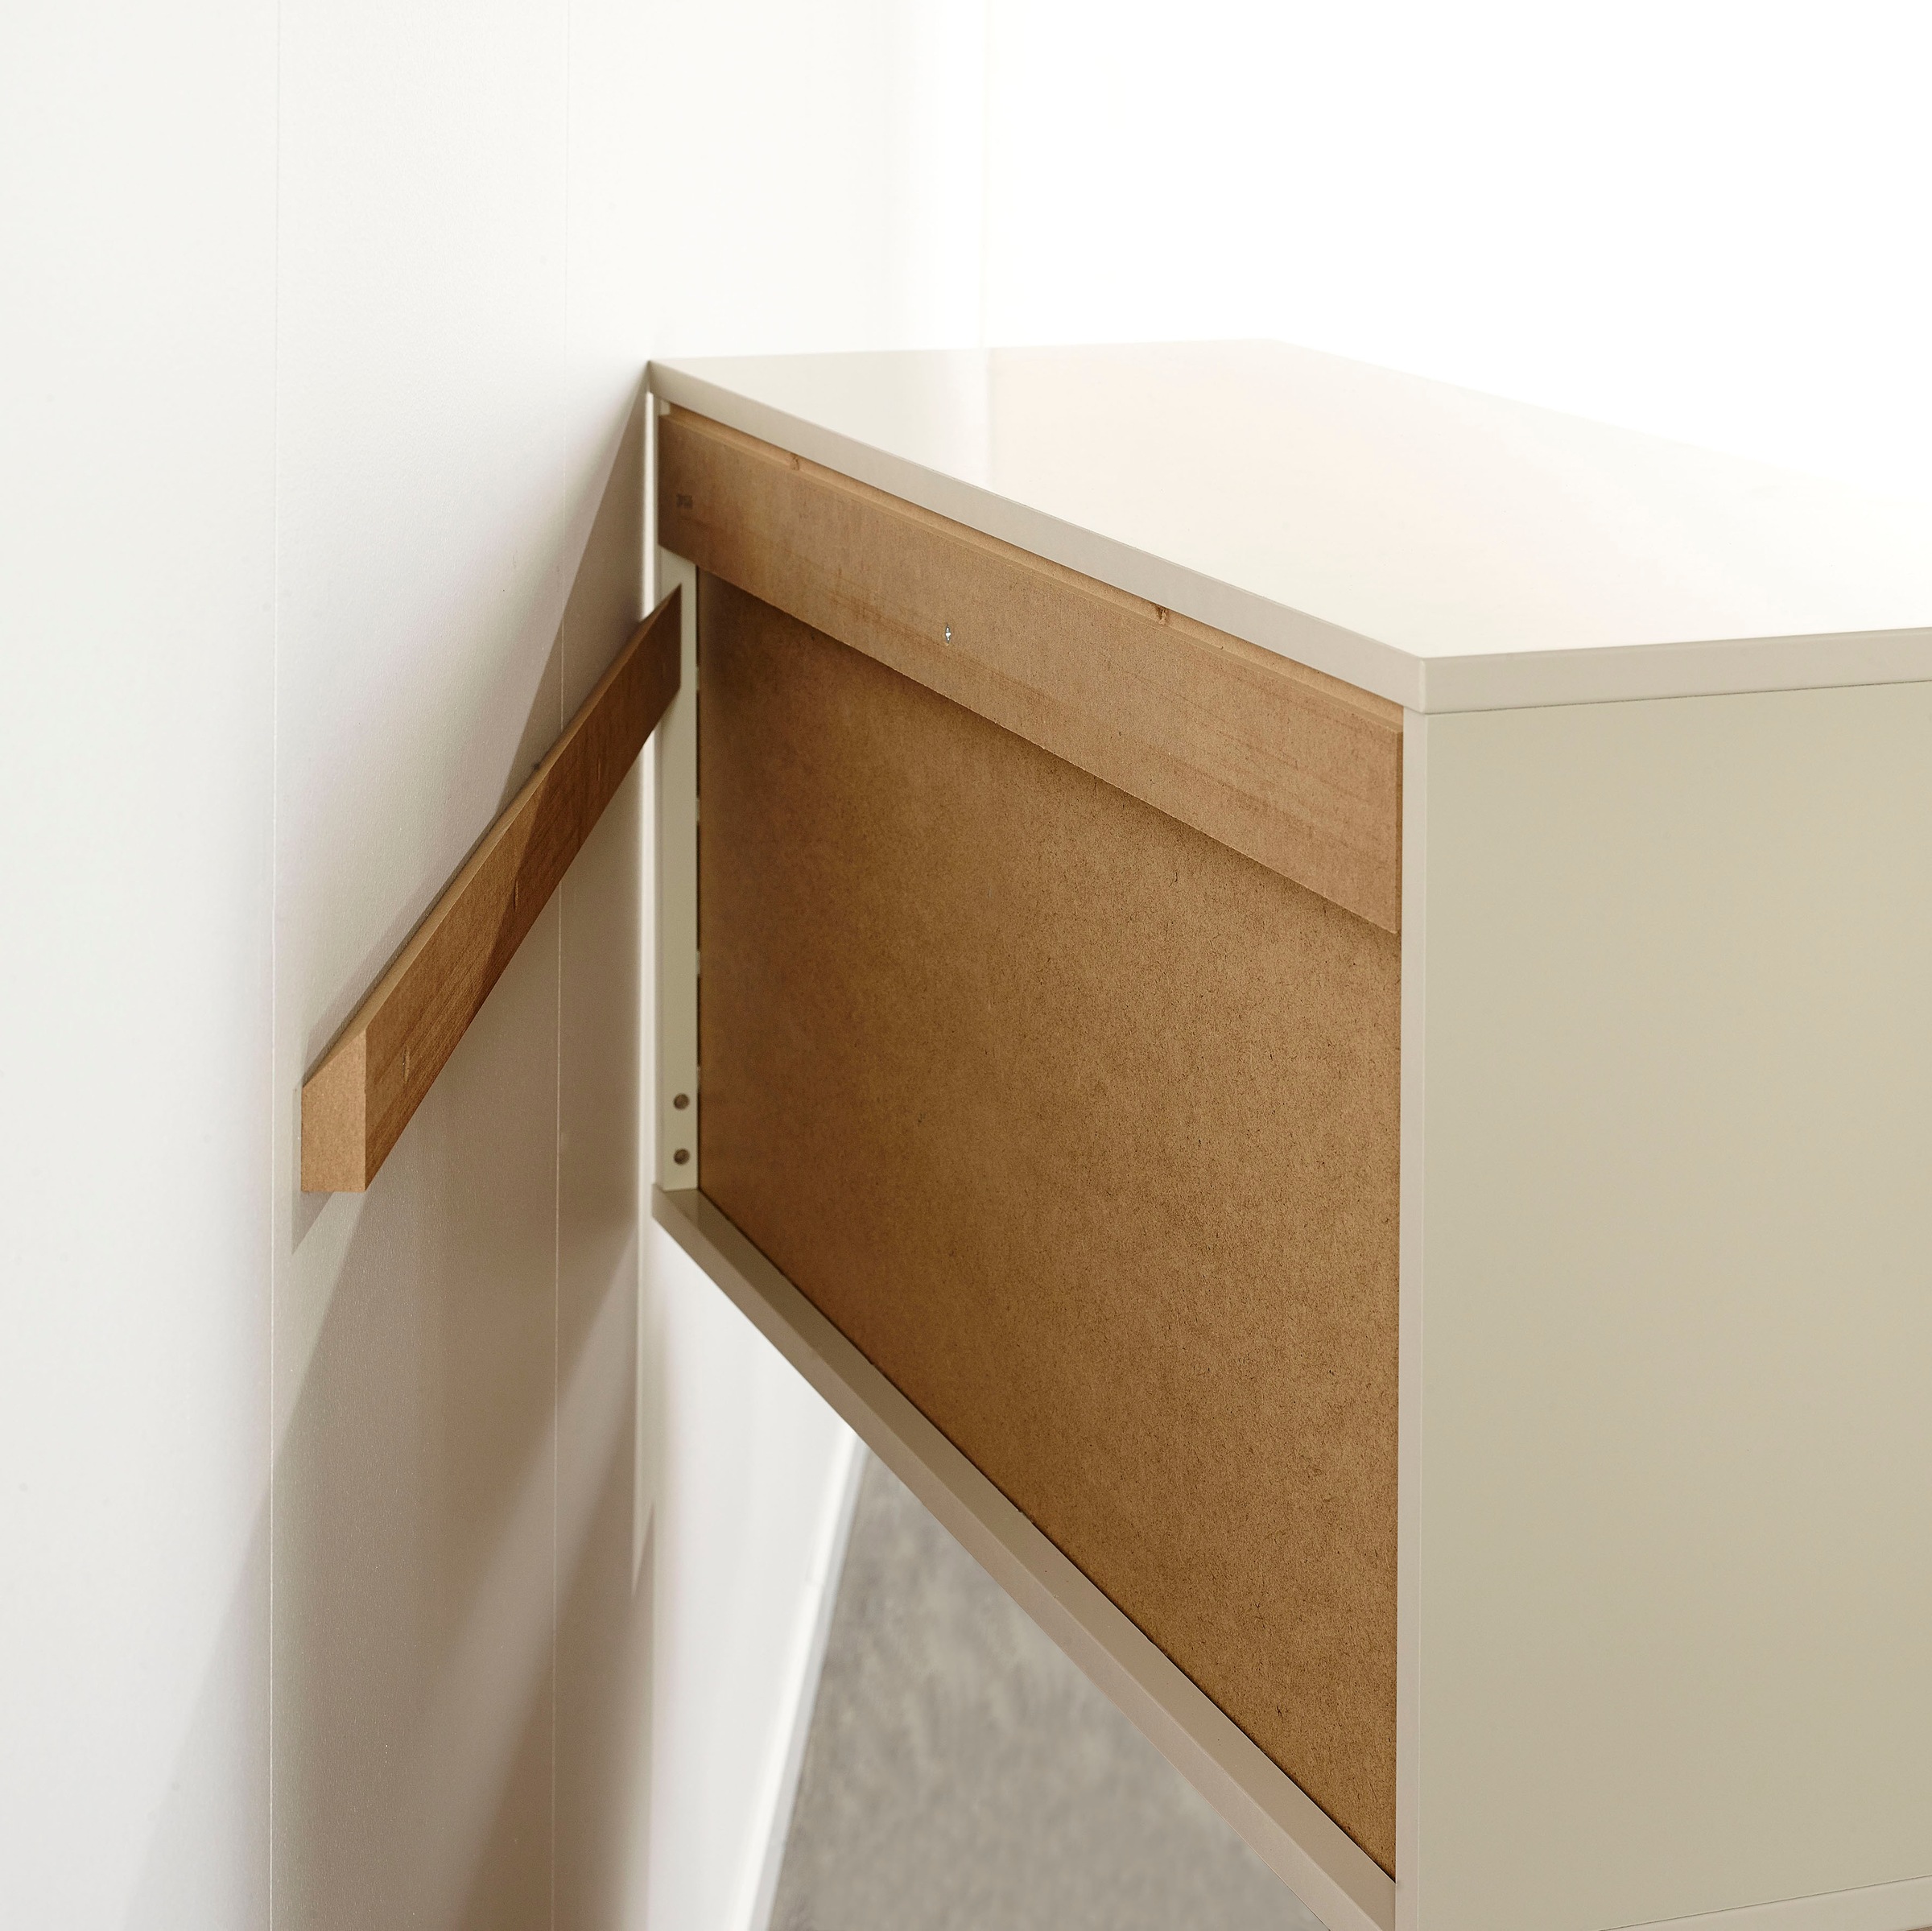 Hammel Furniture TV-Board »Mistral Fernsehschrank, Medienmöbel, Hängend«, mit Tür mit Akustikstoff, Kabeldurchführung, Lowboard, B: 108 cm